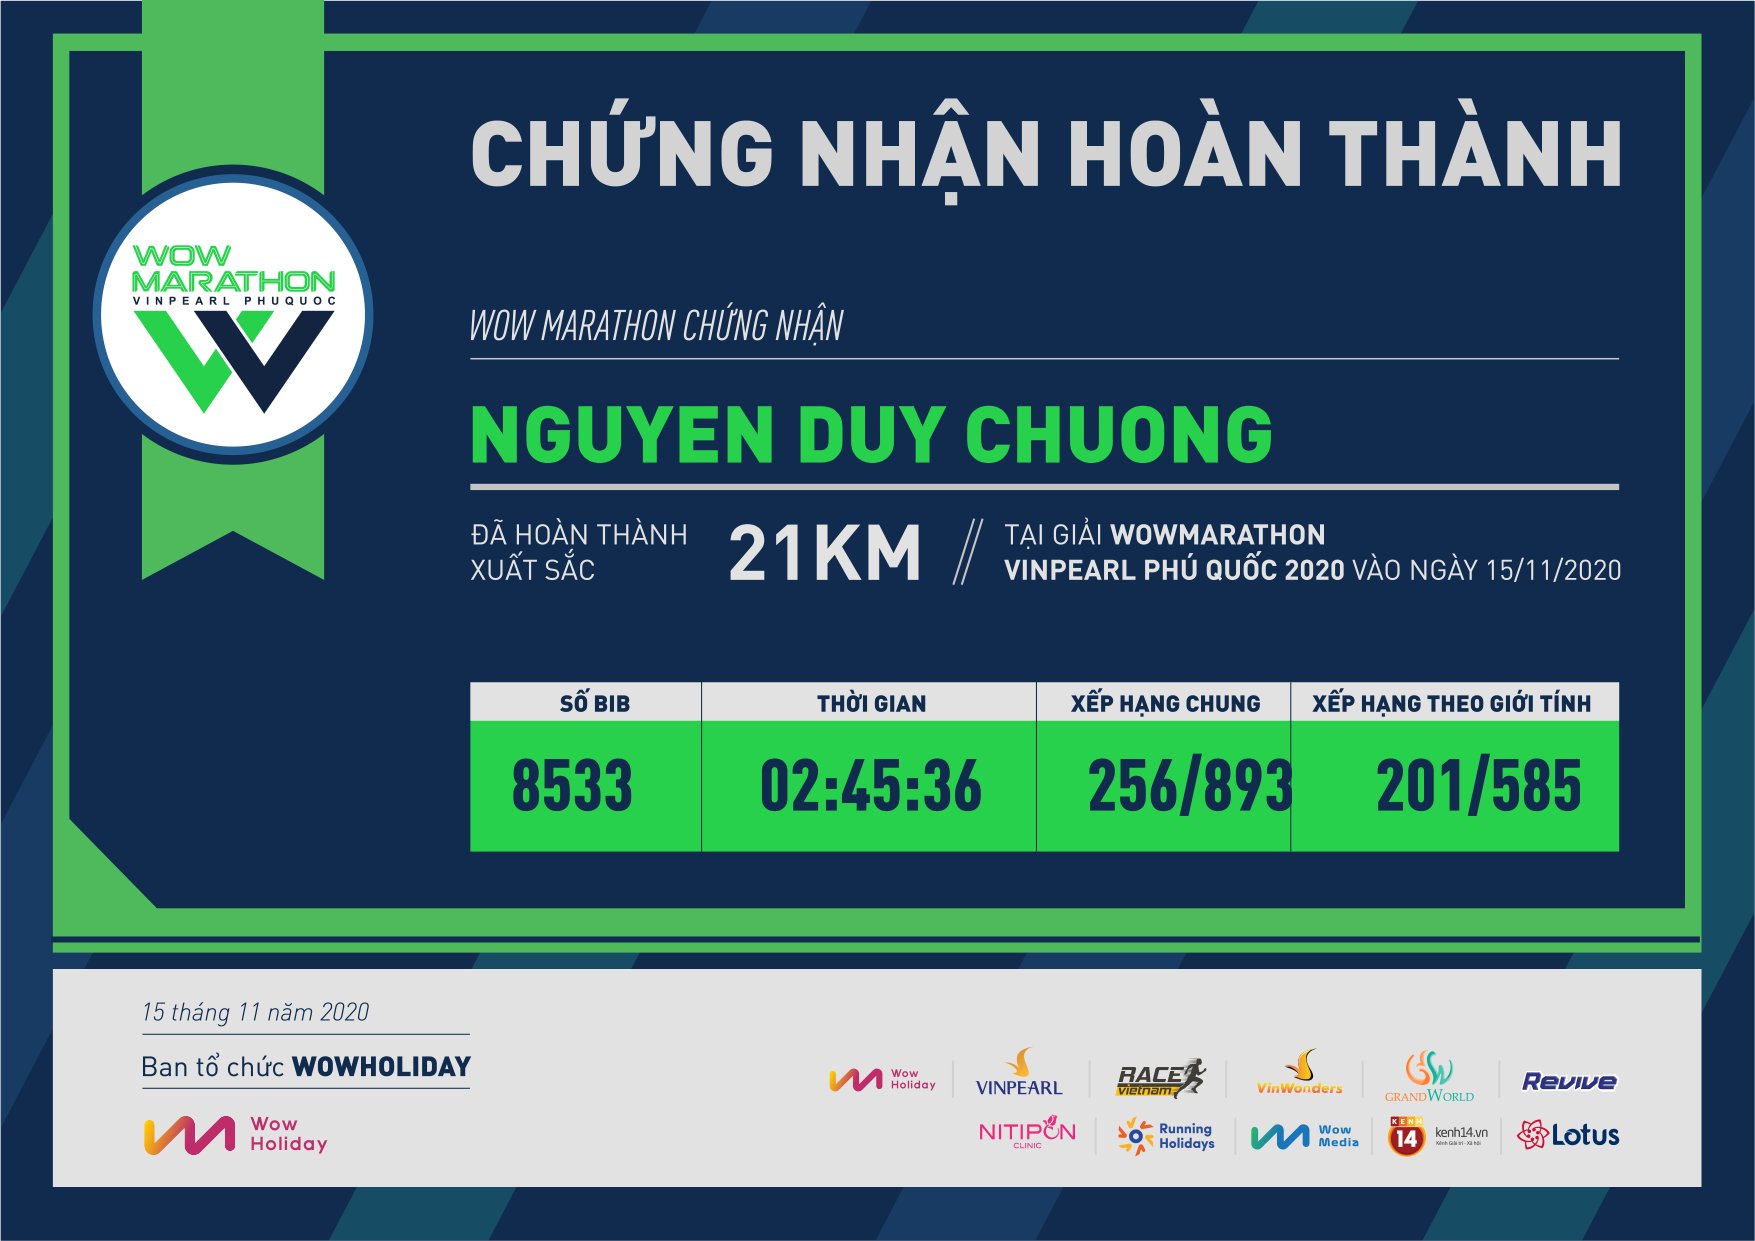 8533 - Nguyen Duy Chuong